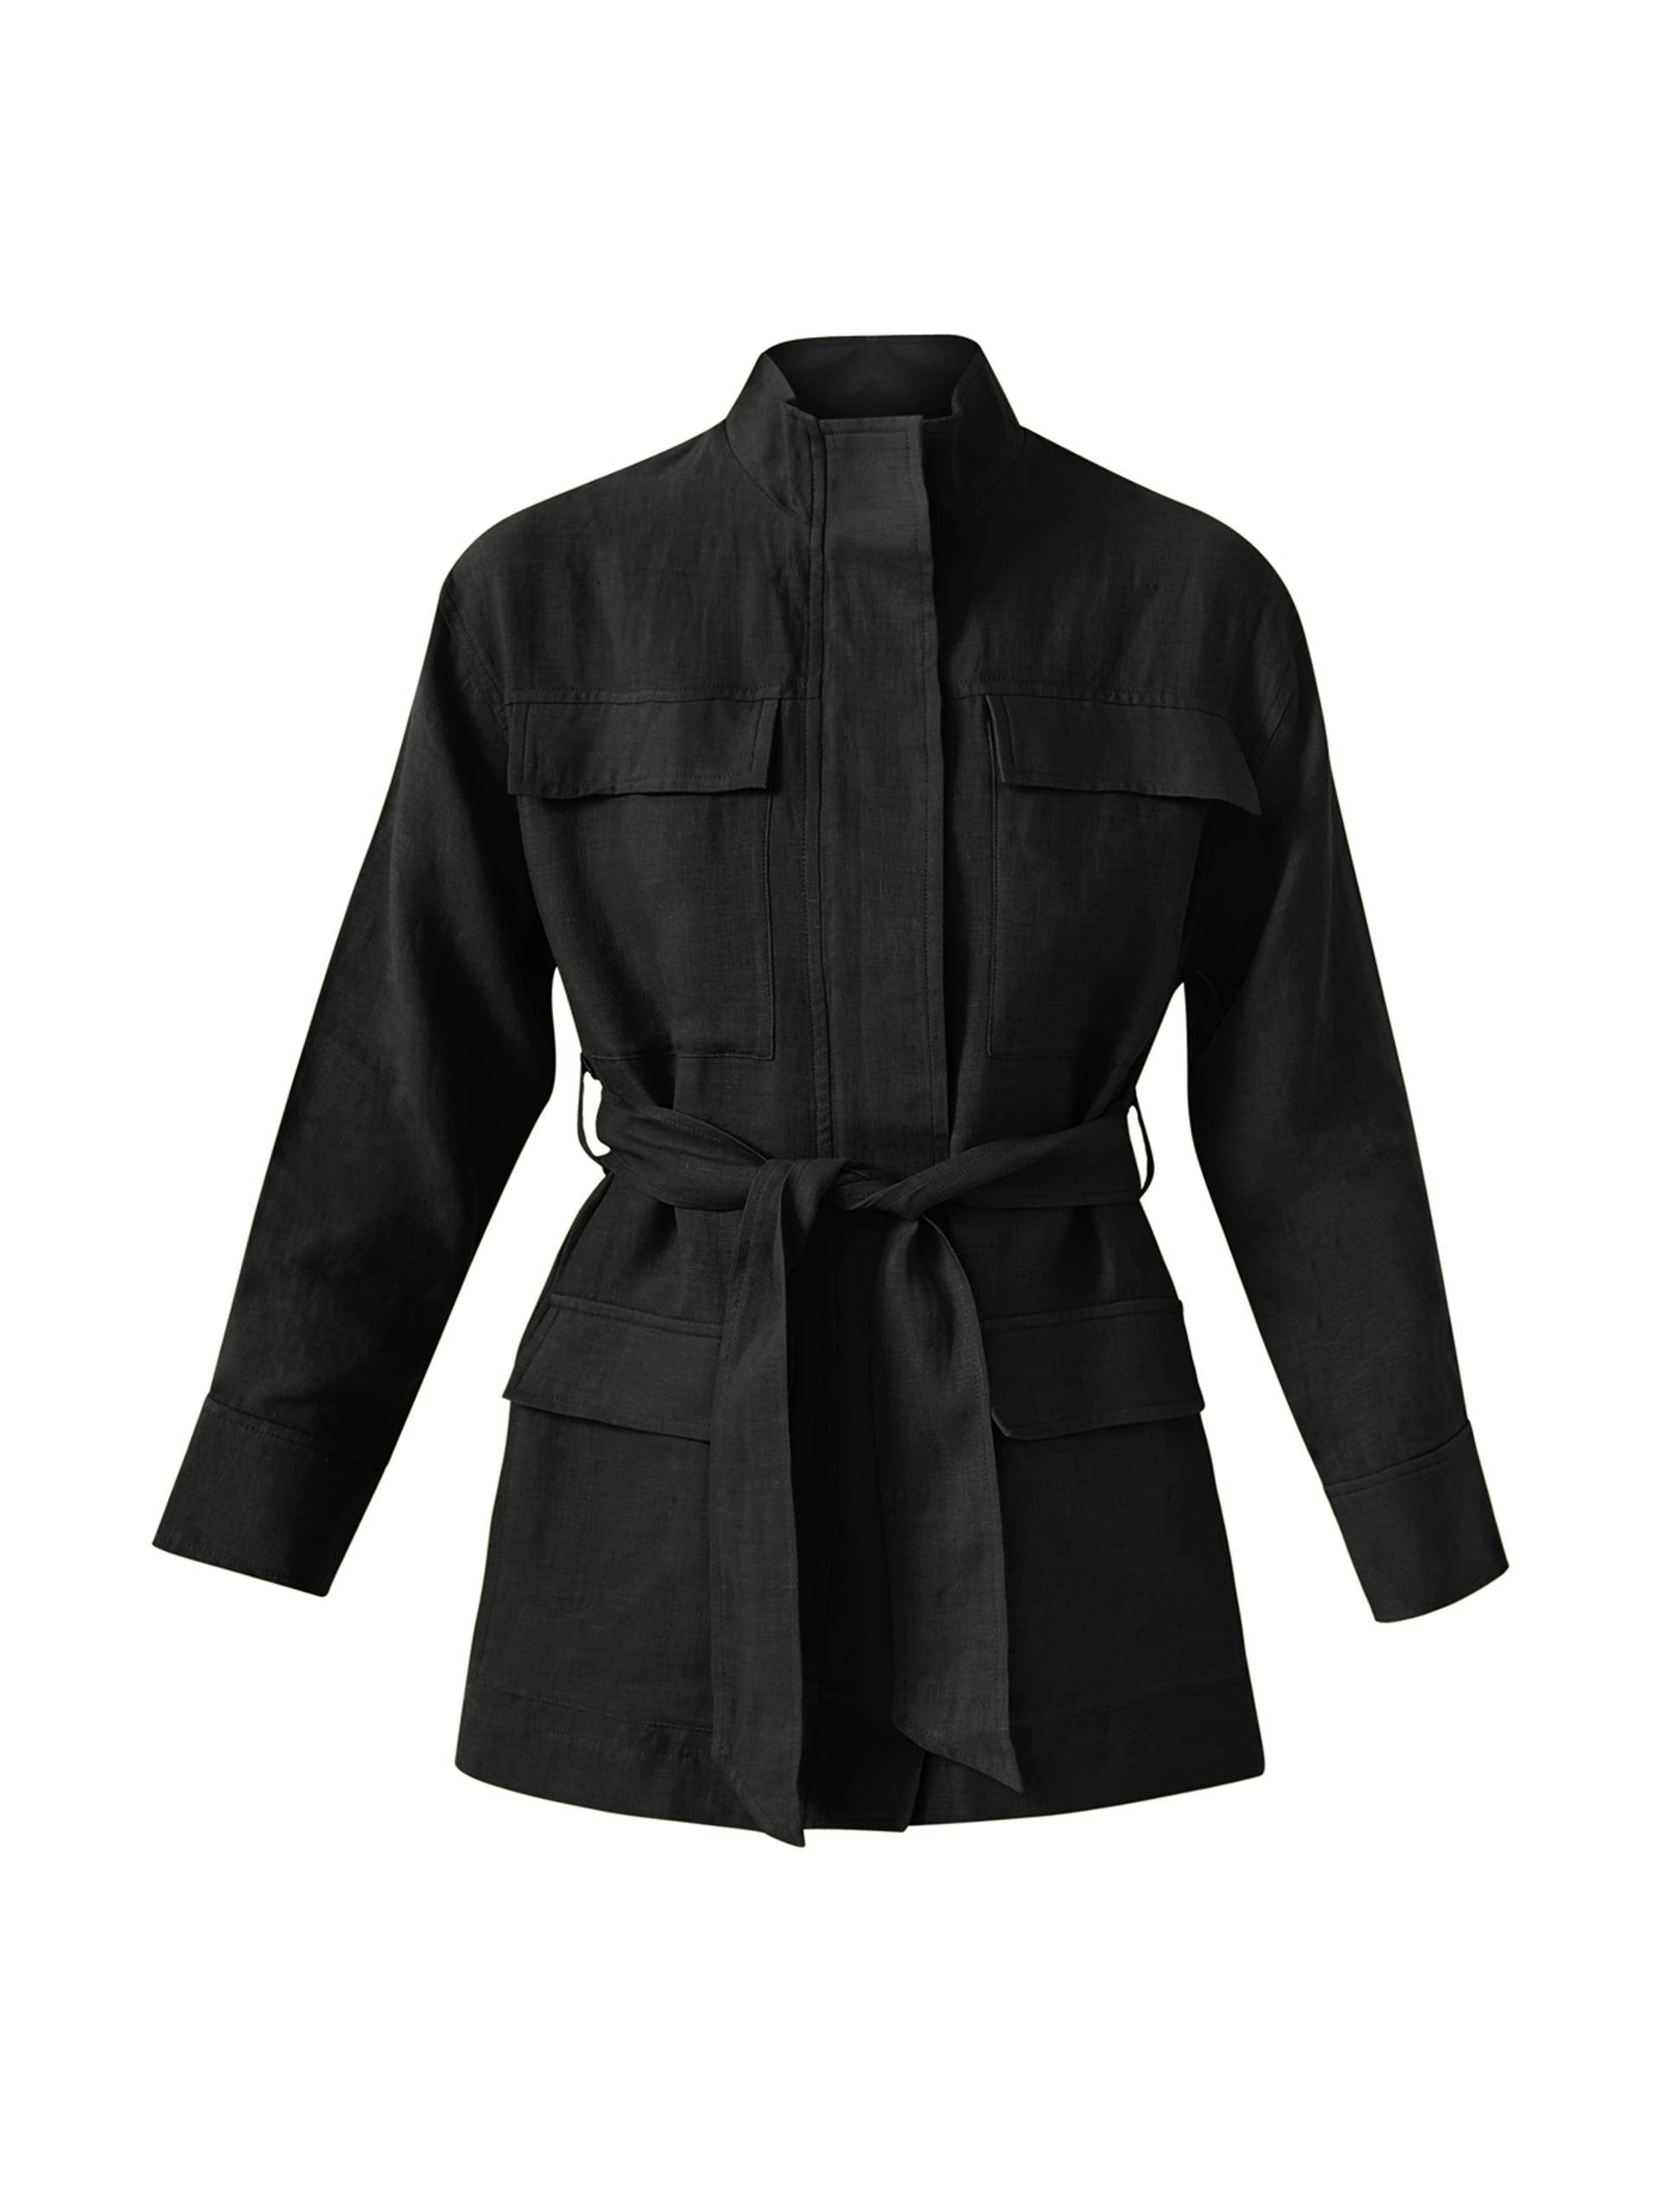 India black linen jacket